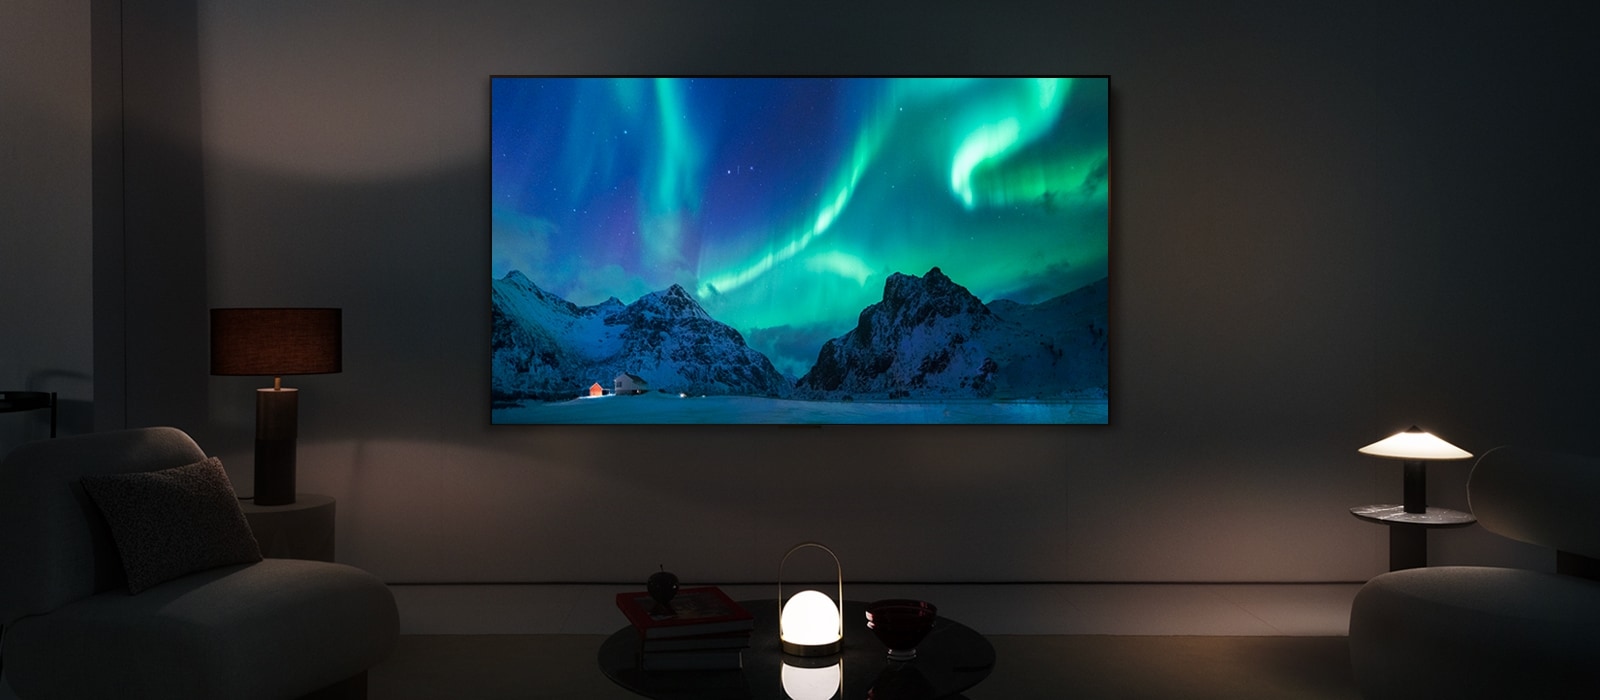 يظهر تلفزيون LG OLED TV في غرفة معيشة عصرية في الليل. يتم عرض صورة الشفق القطبي على الشاشة بمستويات السطوع المثالية.